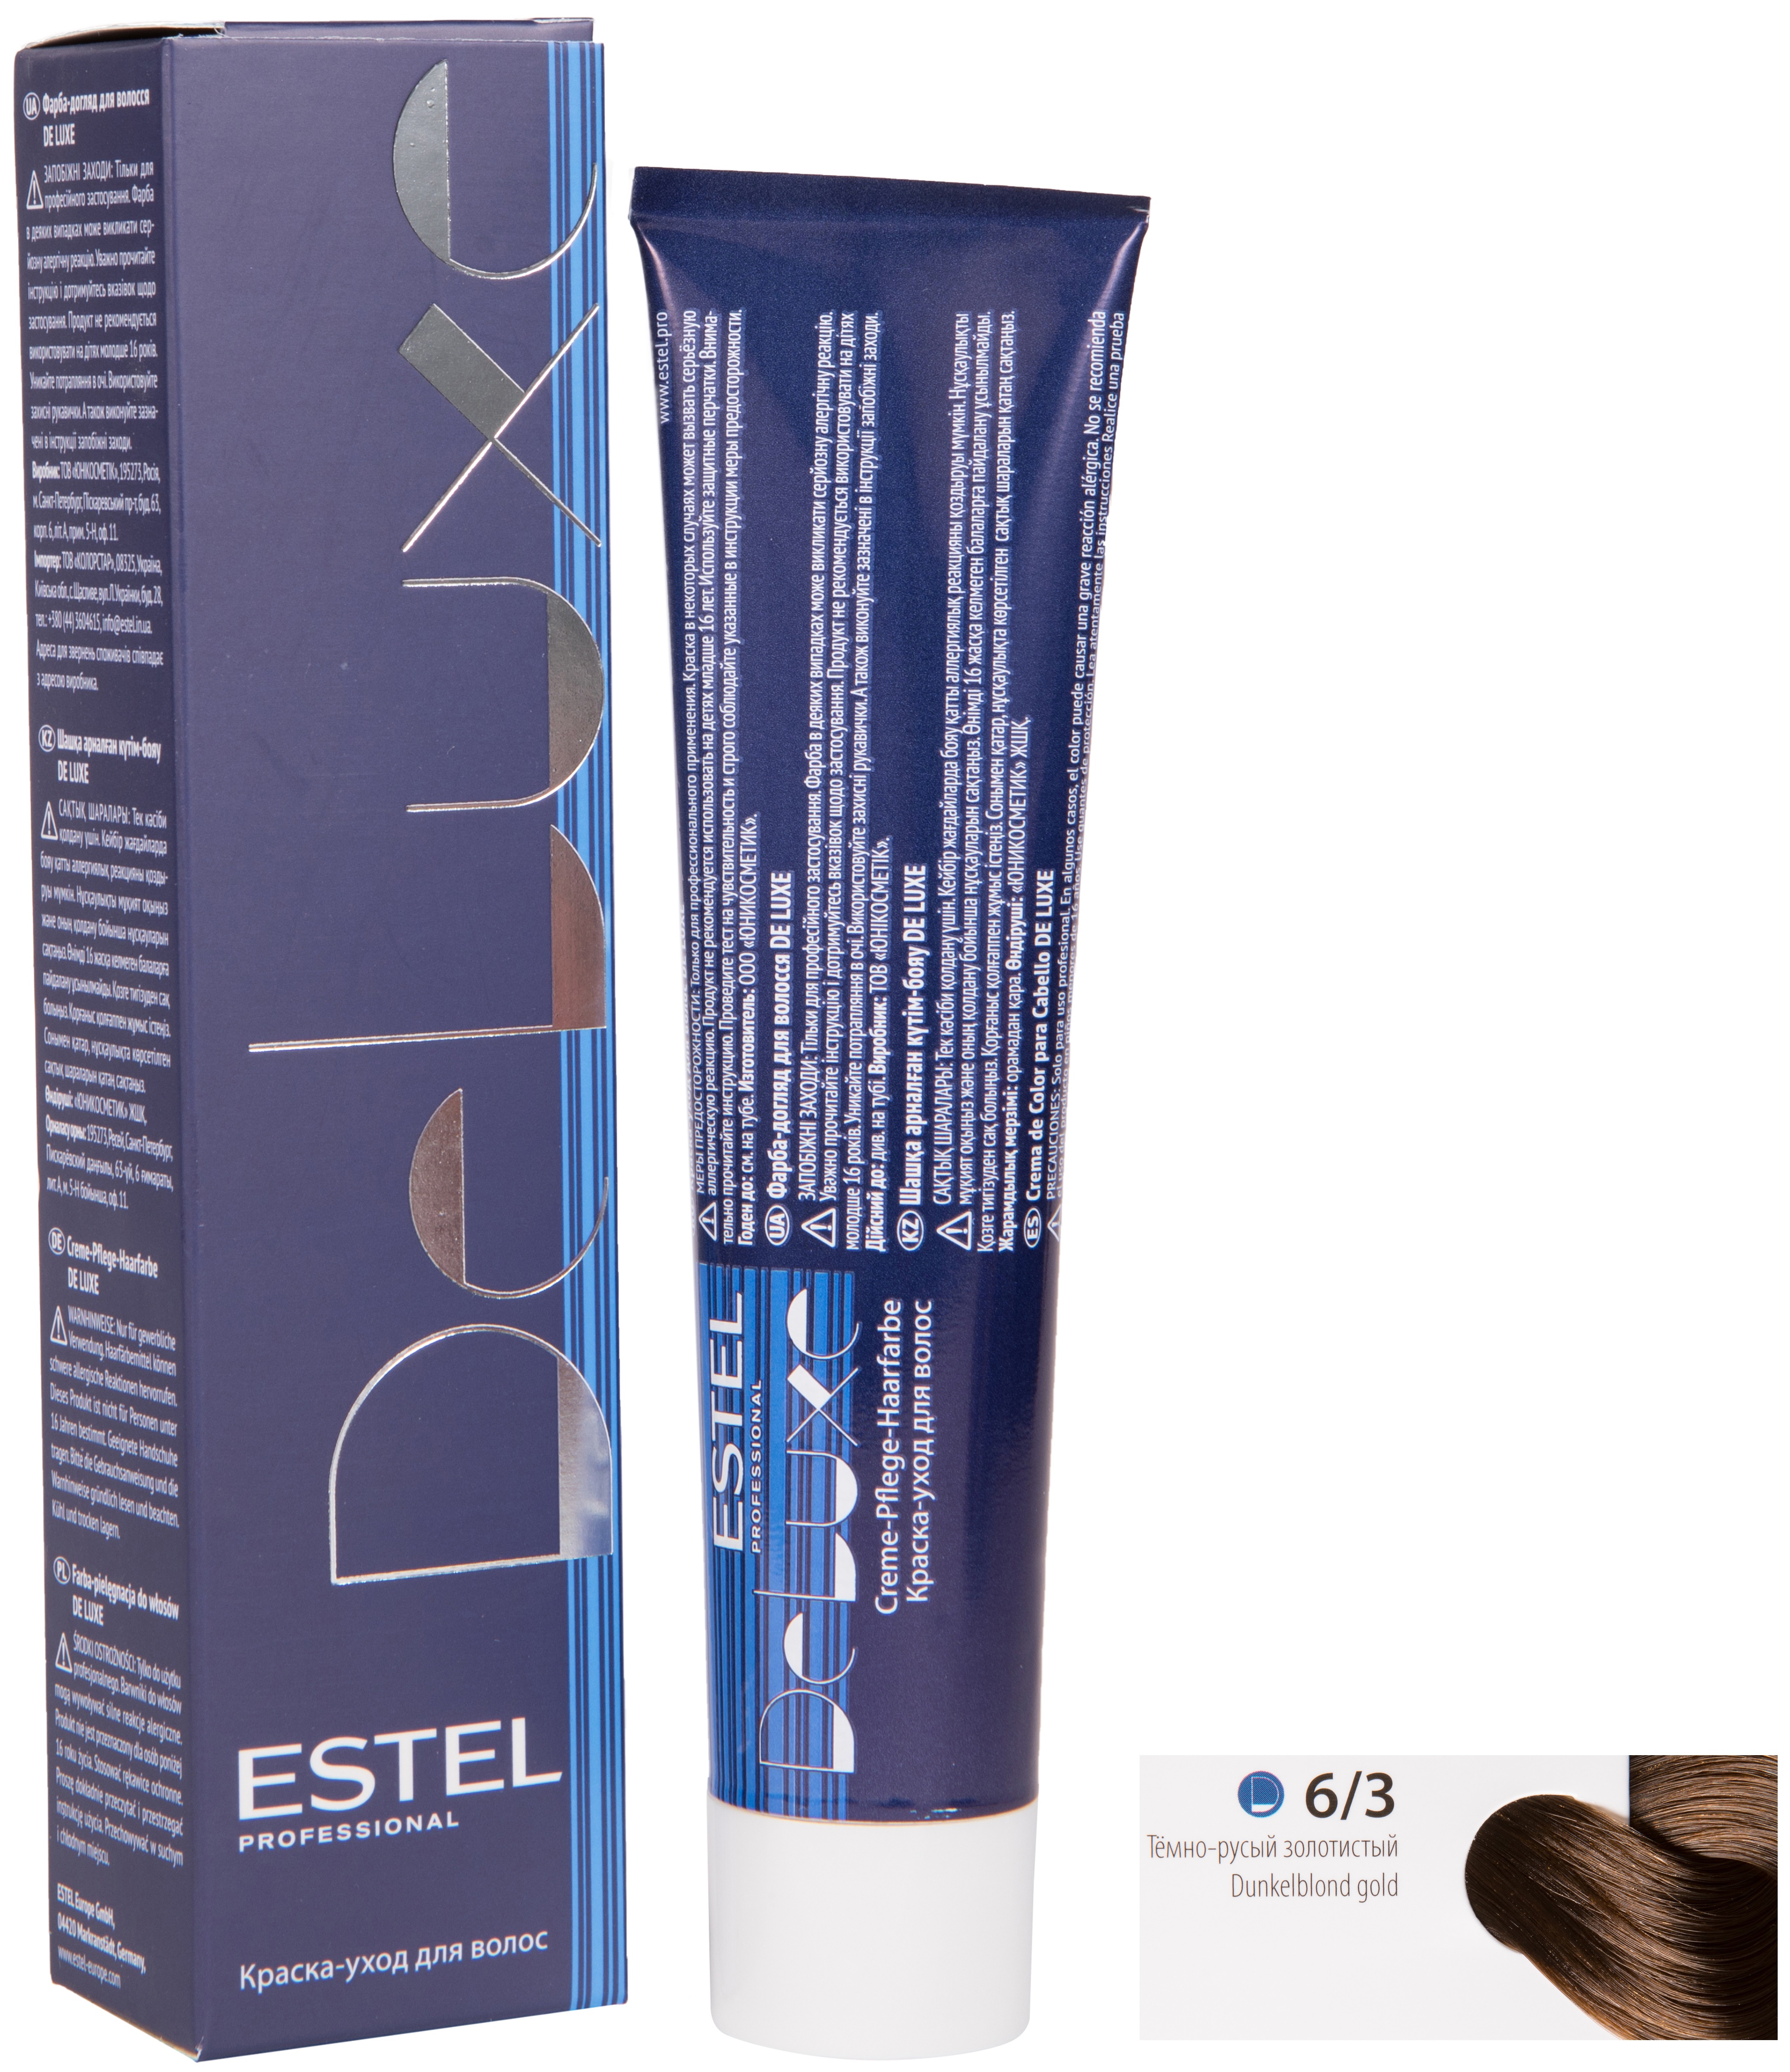 Краска для волос ESTEL PROFESSIONAL 6/3 DE LUXE краска-уход для окрашивания волос, темно-русый золотистый 60 мл